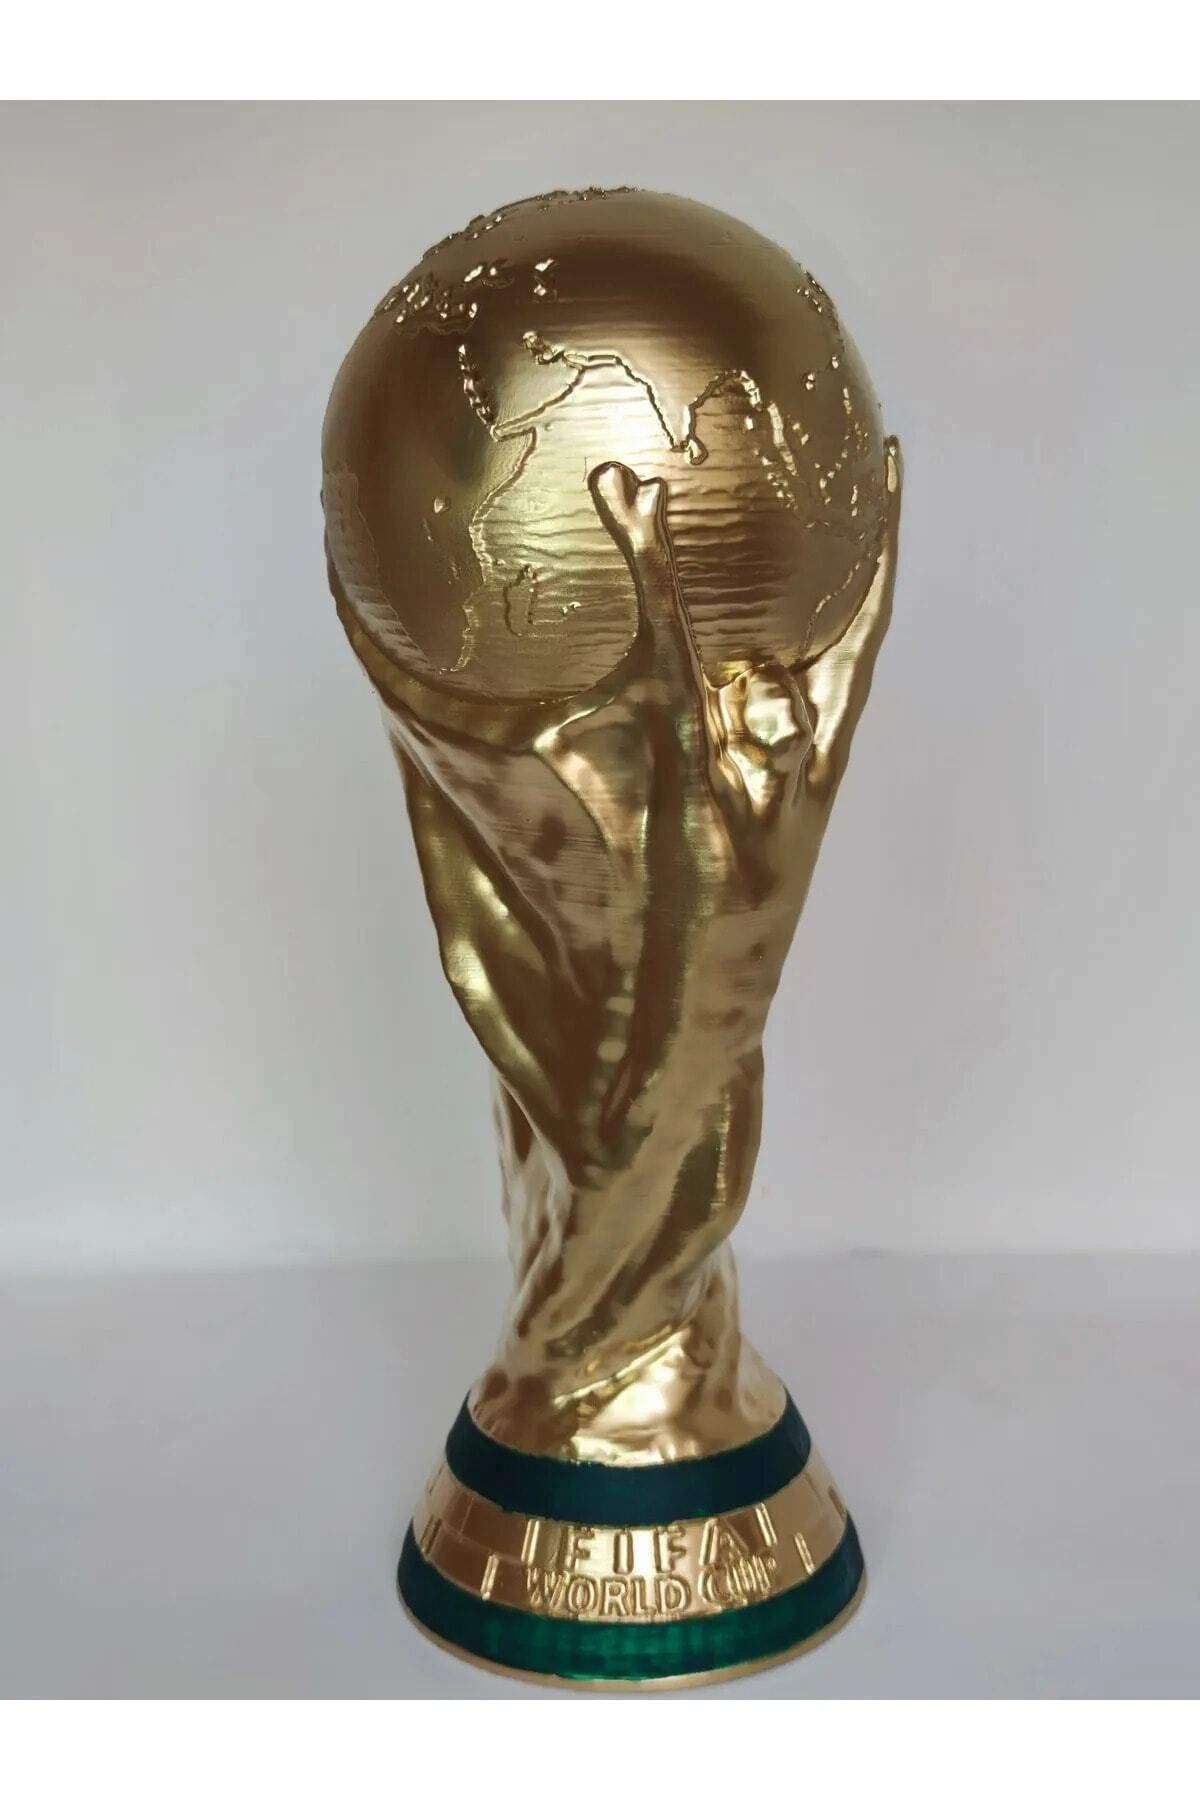 Genel Markalar 36,5 Cm Boy Dünya Kupası Gold Kaplama Gerçek Boyut Messi Qatar Futbol (500GR AĞIR ÜRÜN)